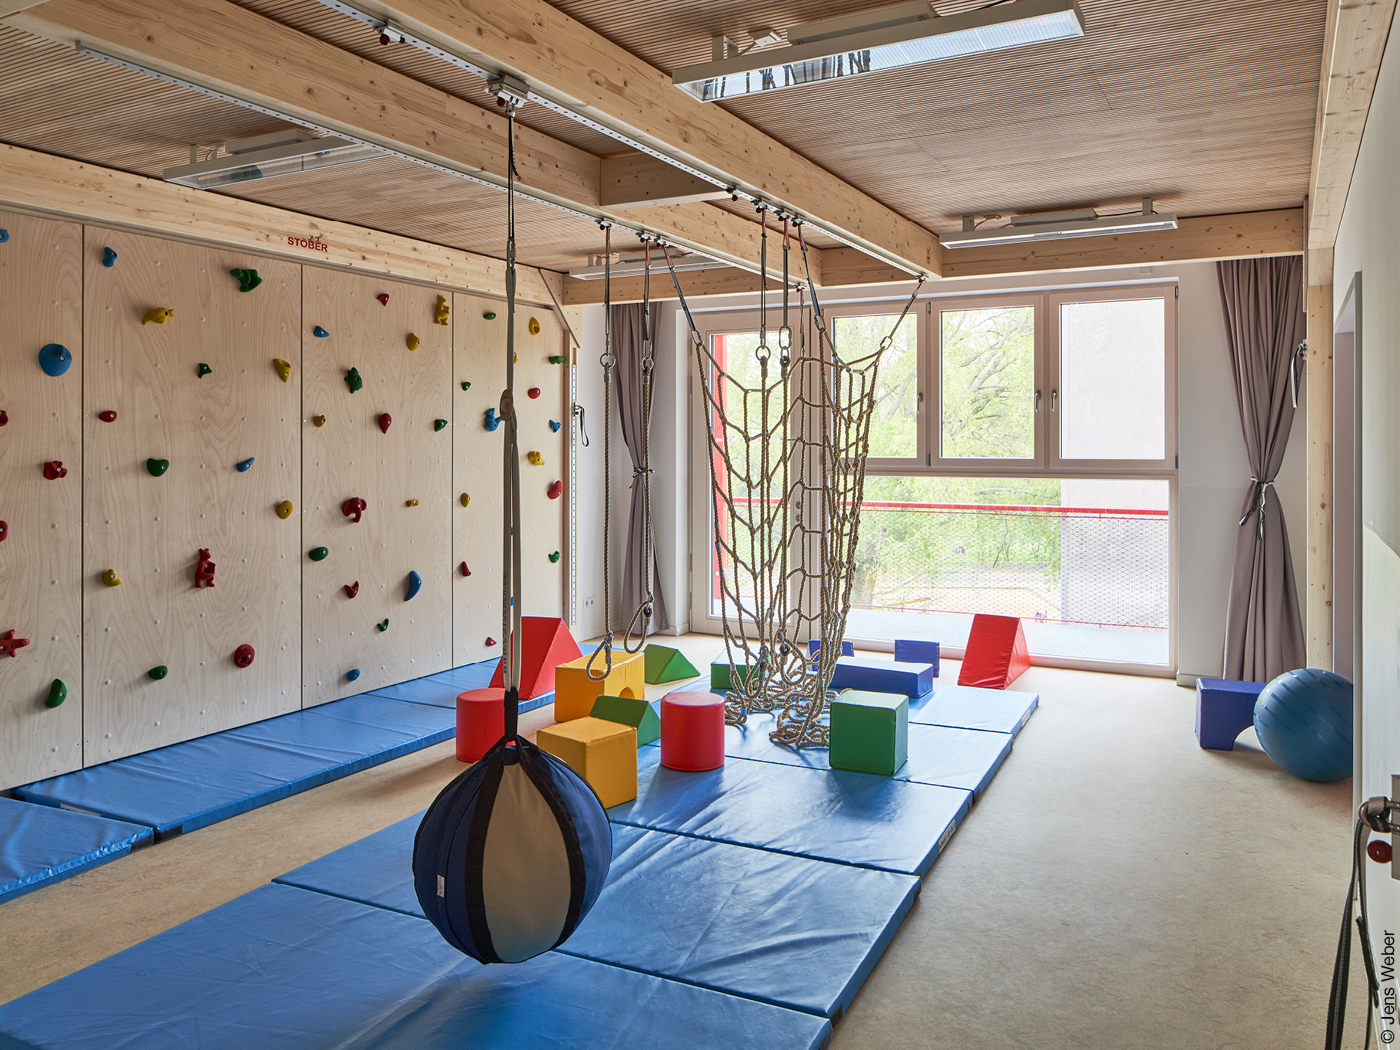 Ein Raum mit Spiel- und Sportgeräten, überdimensionalen Bauklötzen, einer Kletterwand und blauen Bodenmatten